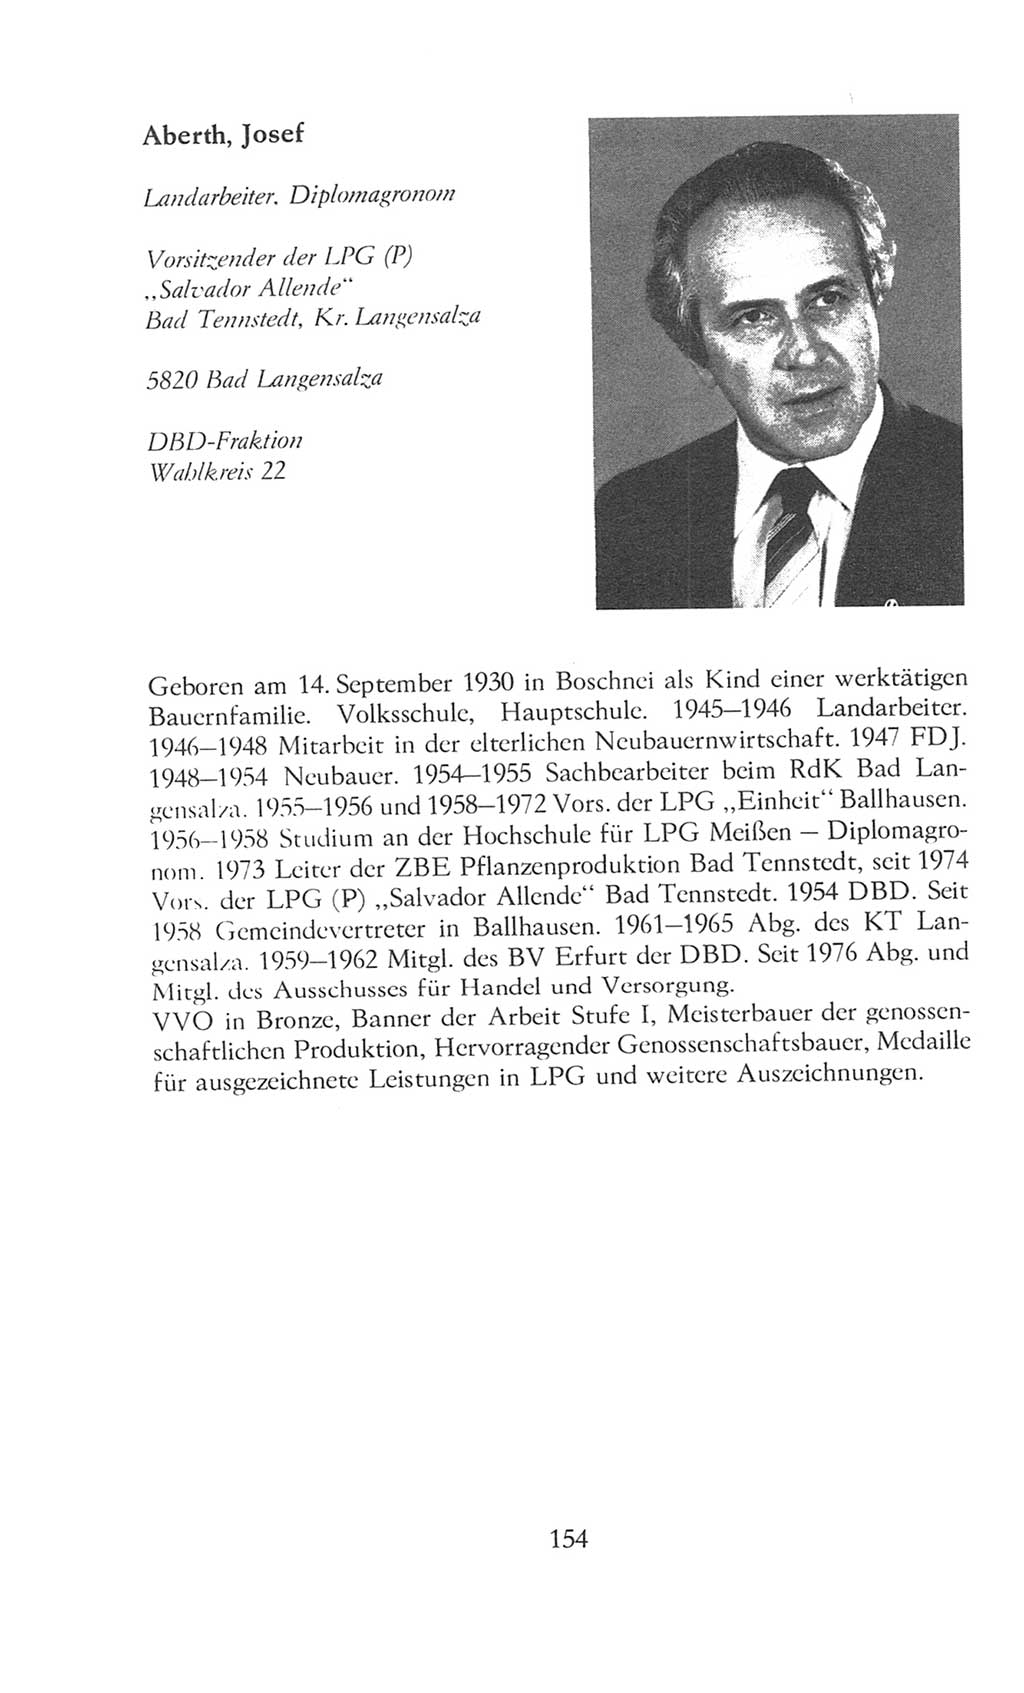 Volkskammer (VK) der Deutschen Demokratischen Republik (DDR), 8. Wahlperiode 1981-1986, Seite 154 (VK. DDR 8. WP. 1981-1986, S. 154)